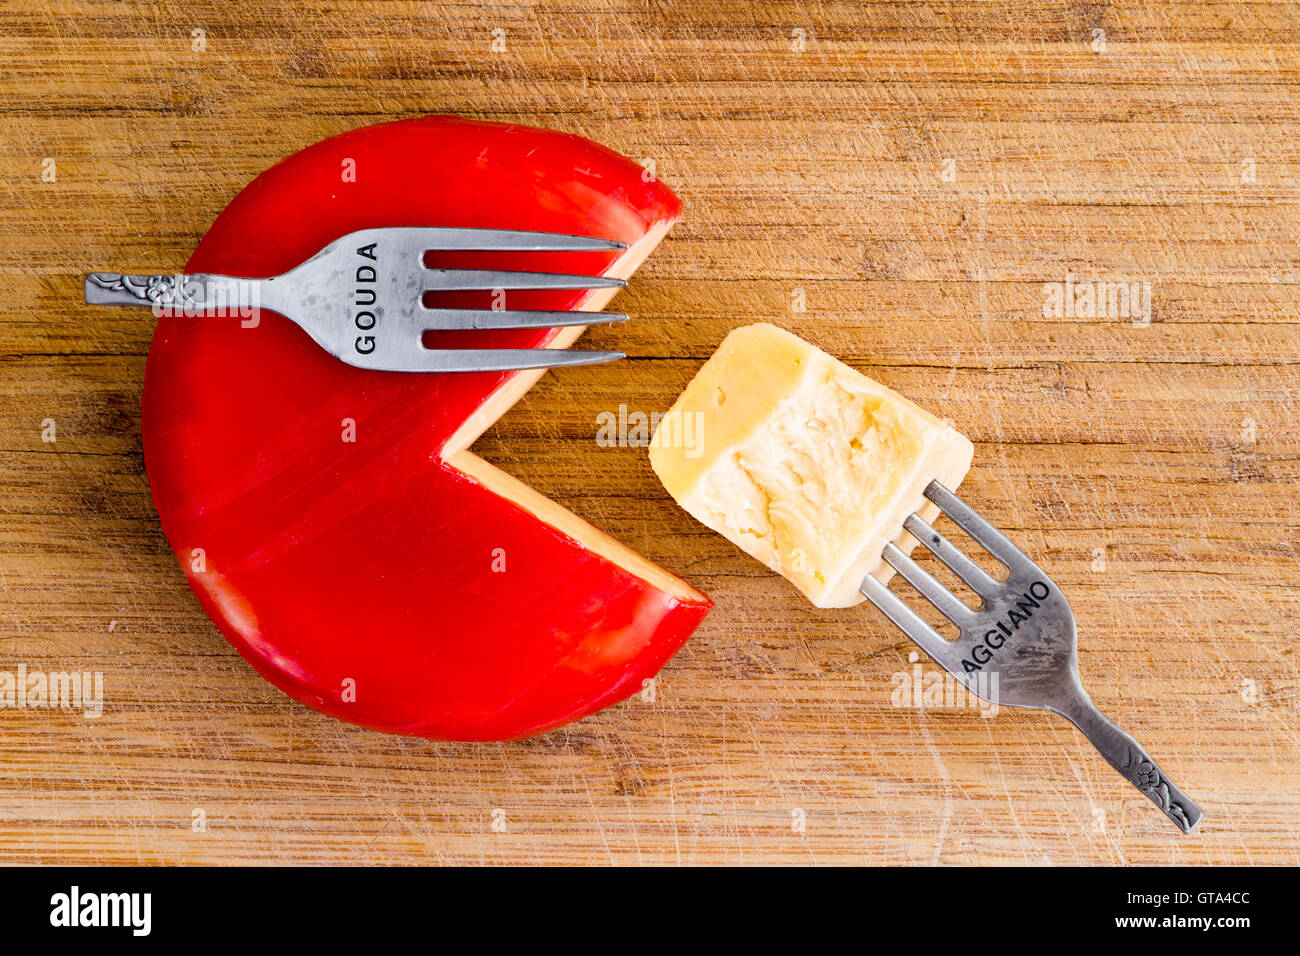 Kreative Anordnung von Wachs bedeckt Käse Rad mit einem Viertel schneiden und einer Gabel mit Käse Stück platziert, als ob Fütterung Stockfoto